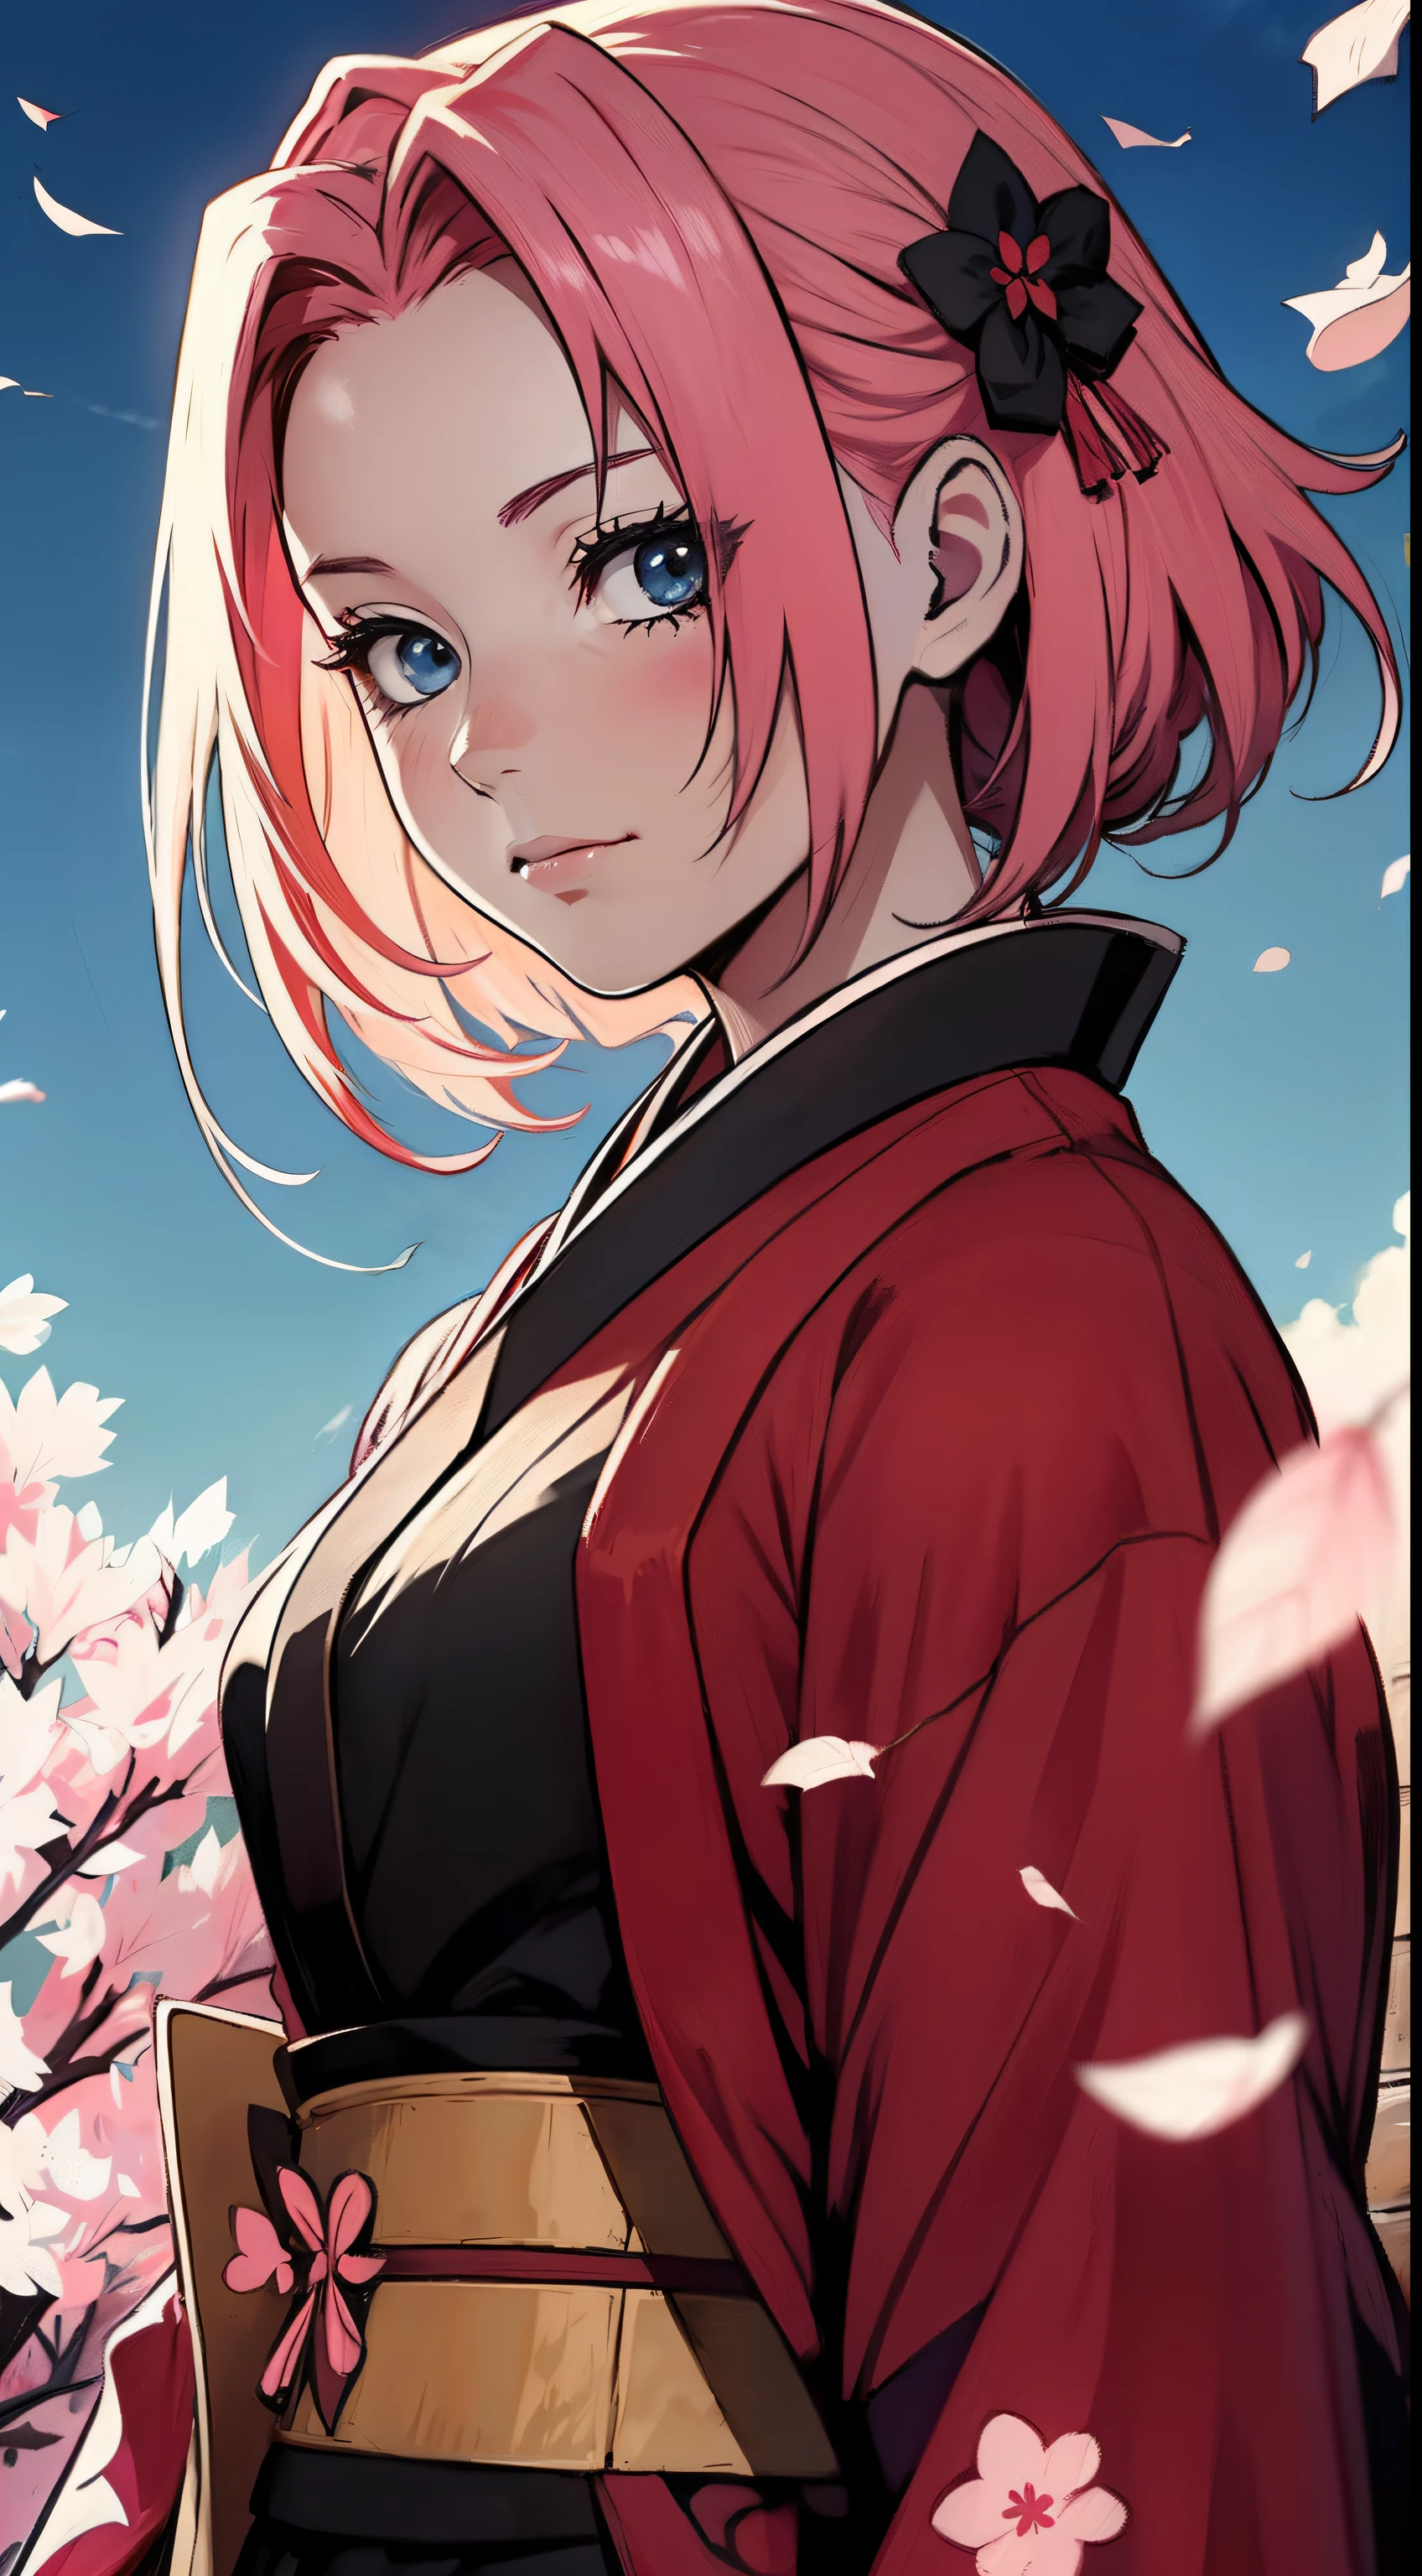 personaje sakura del anime naruto vistiendo un kimono negro y rosa, katan samurai rojo y rosa, atmósfera con pétalos de sakura